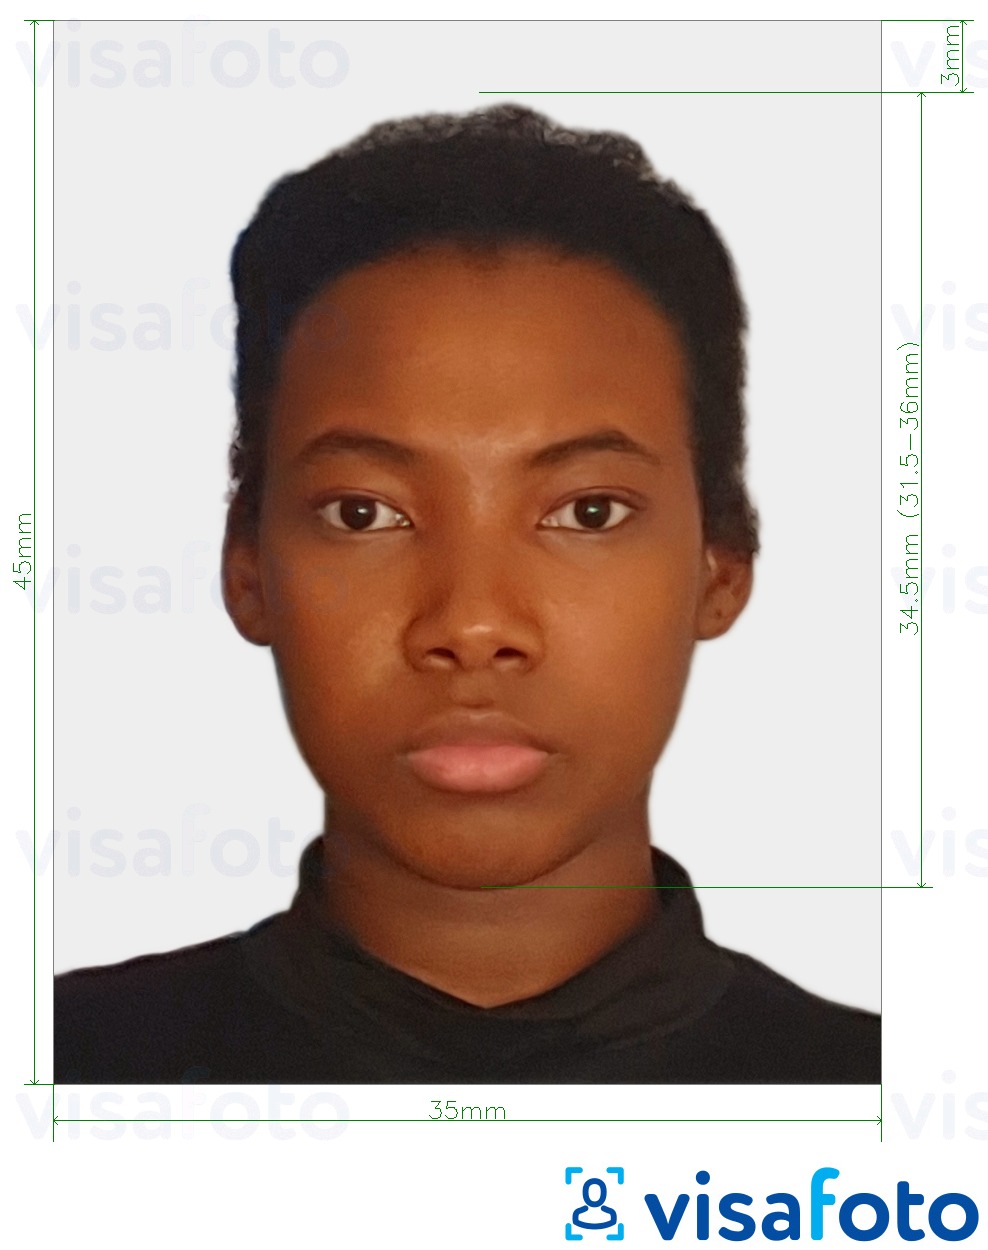 Exemple de foto per a Visa de Suriname en línia amb la mida exacta especificada